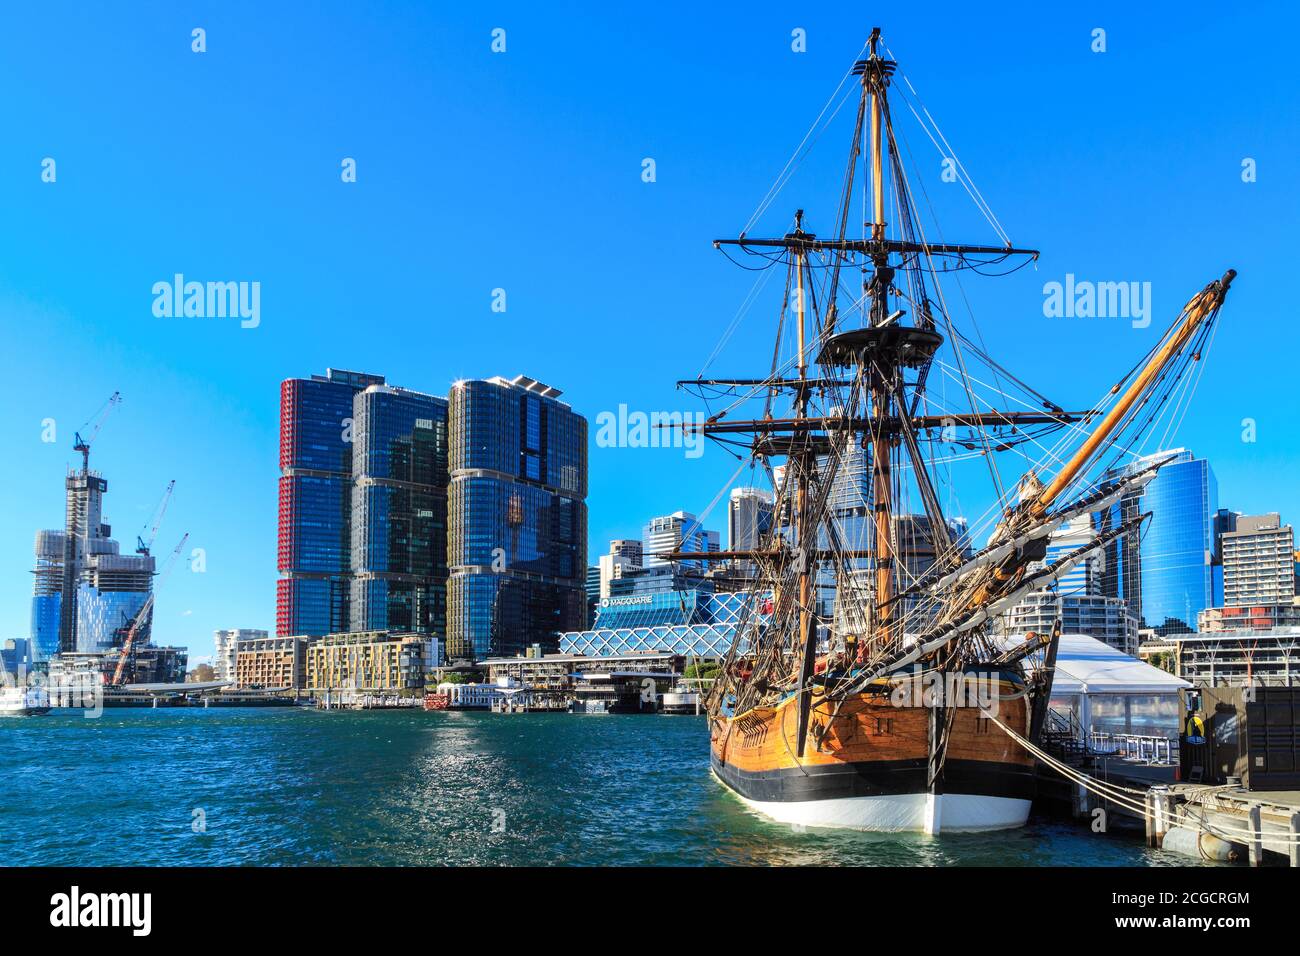 Nachbildung des Schiffes HMS 'Endeavour' von Captain Cook in Darling Harbour, Sydney, Australien. Im Hintergrund sind die International Towers zu sehen Stockfoto